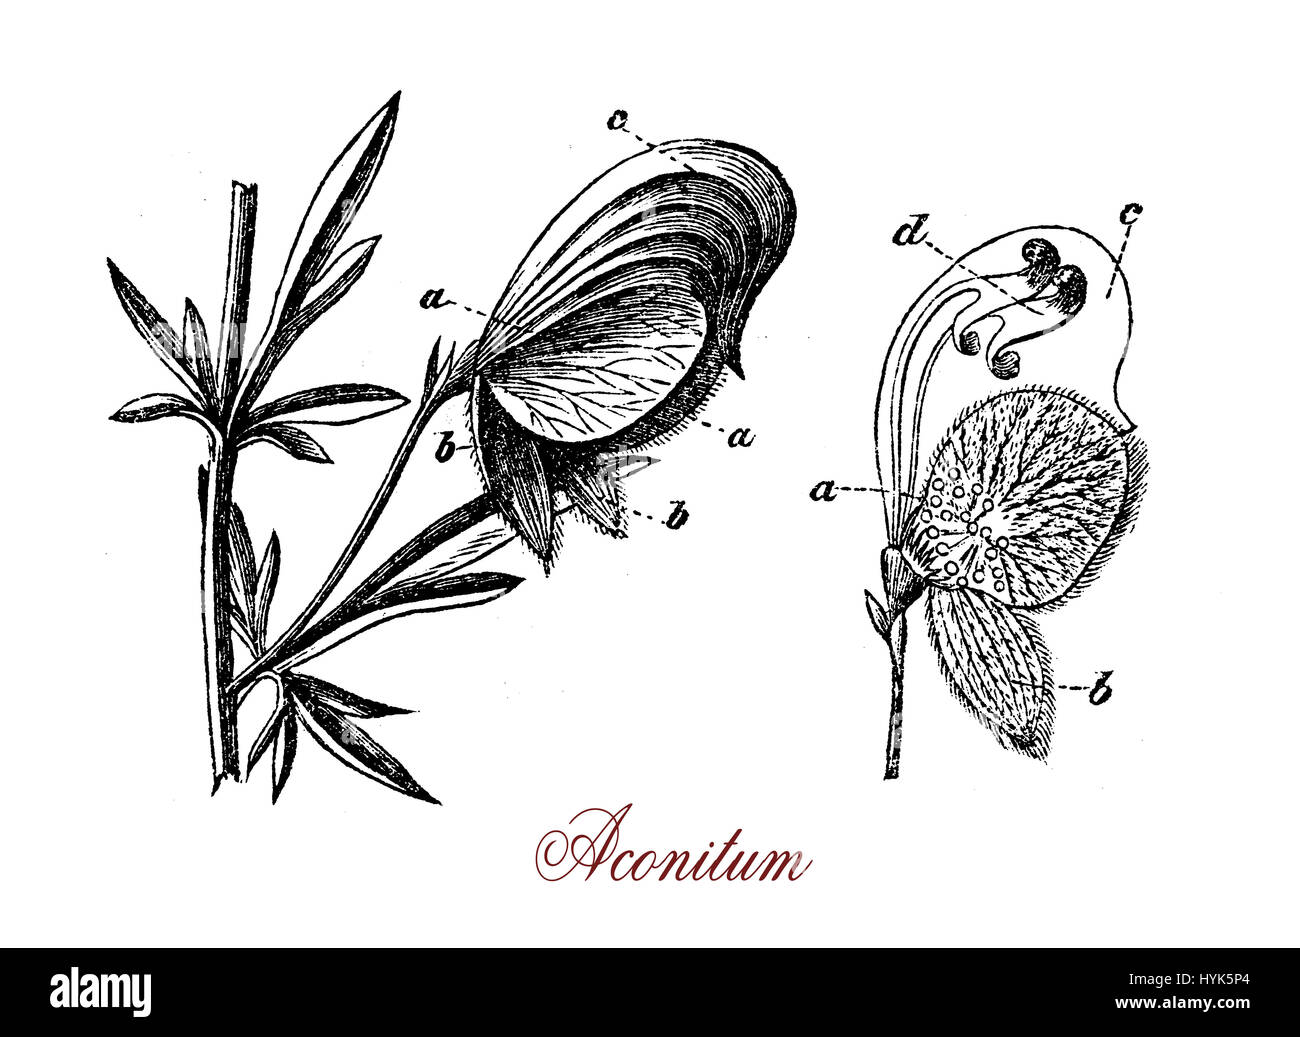 XIX siècle gravure d'Aconitum plante vivace à fleurs très toxique avec feuilles semipalmé, bleu ou violet fleurs et fruits en capsules de graines.Plusieurs espèces de Aconitum ont été utilisés comme poison de flèche. Banque D'Images